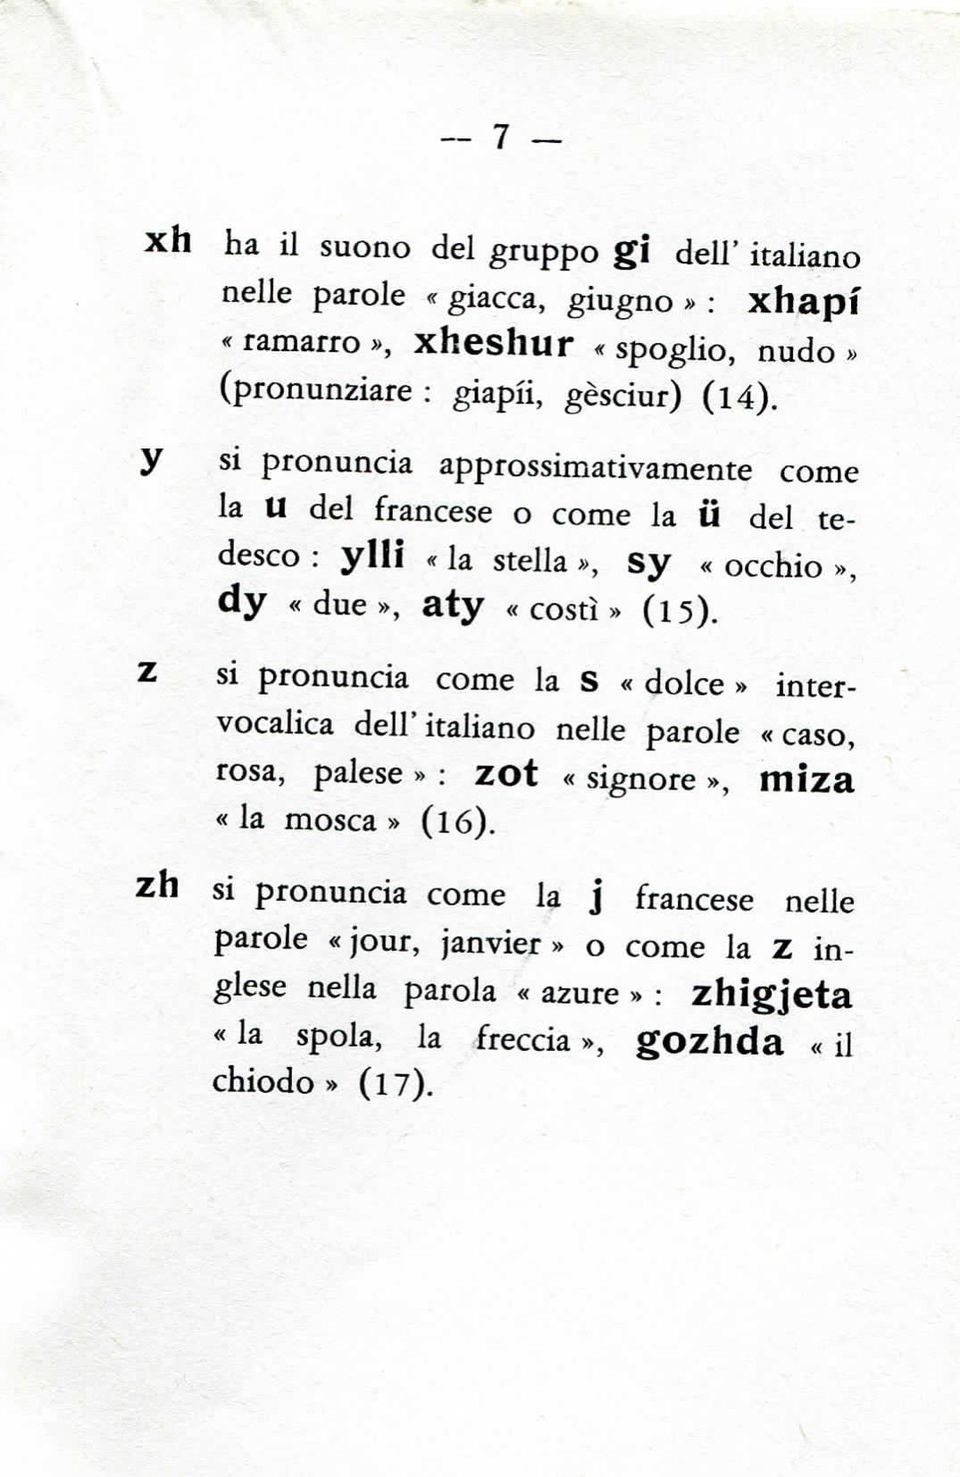 Z si pronuncia come la S «dolce» intervocalica dell' italiano nelle parole «caso, rosa, palese» : ZOt «signore», miza «la mosca» (l6).